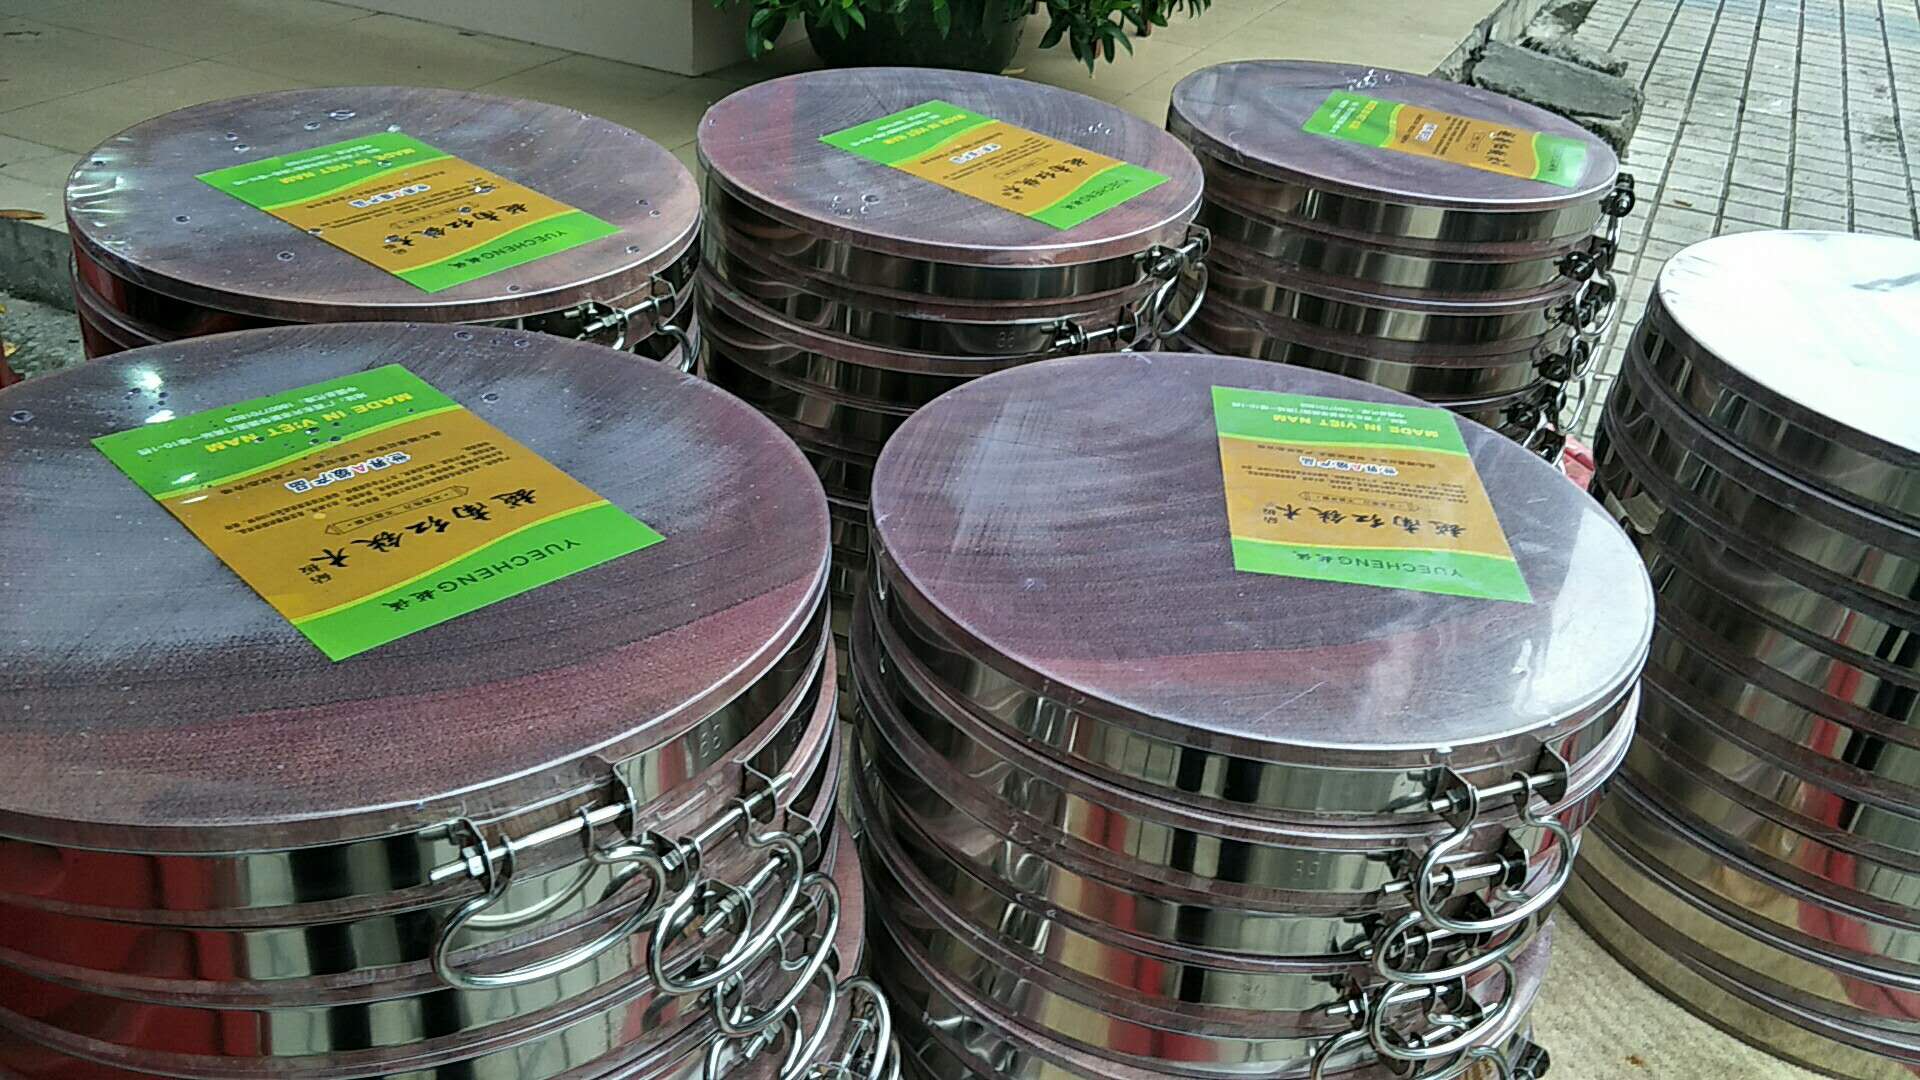 广西红木砧板|广西红木砧板厂家|广西红木砧板厂家直销|广西红木砧板多少钱一个|广西梨花木砧板价格图片